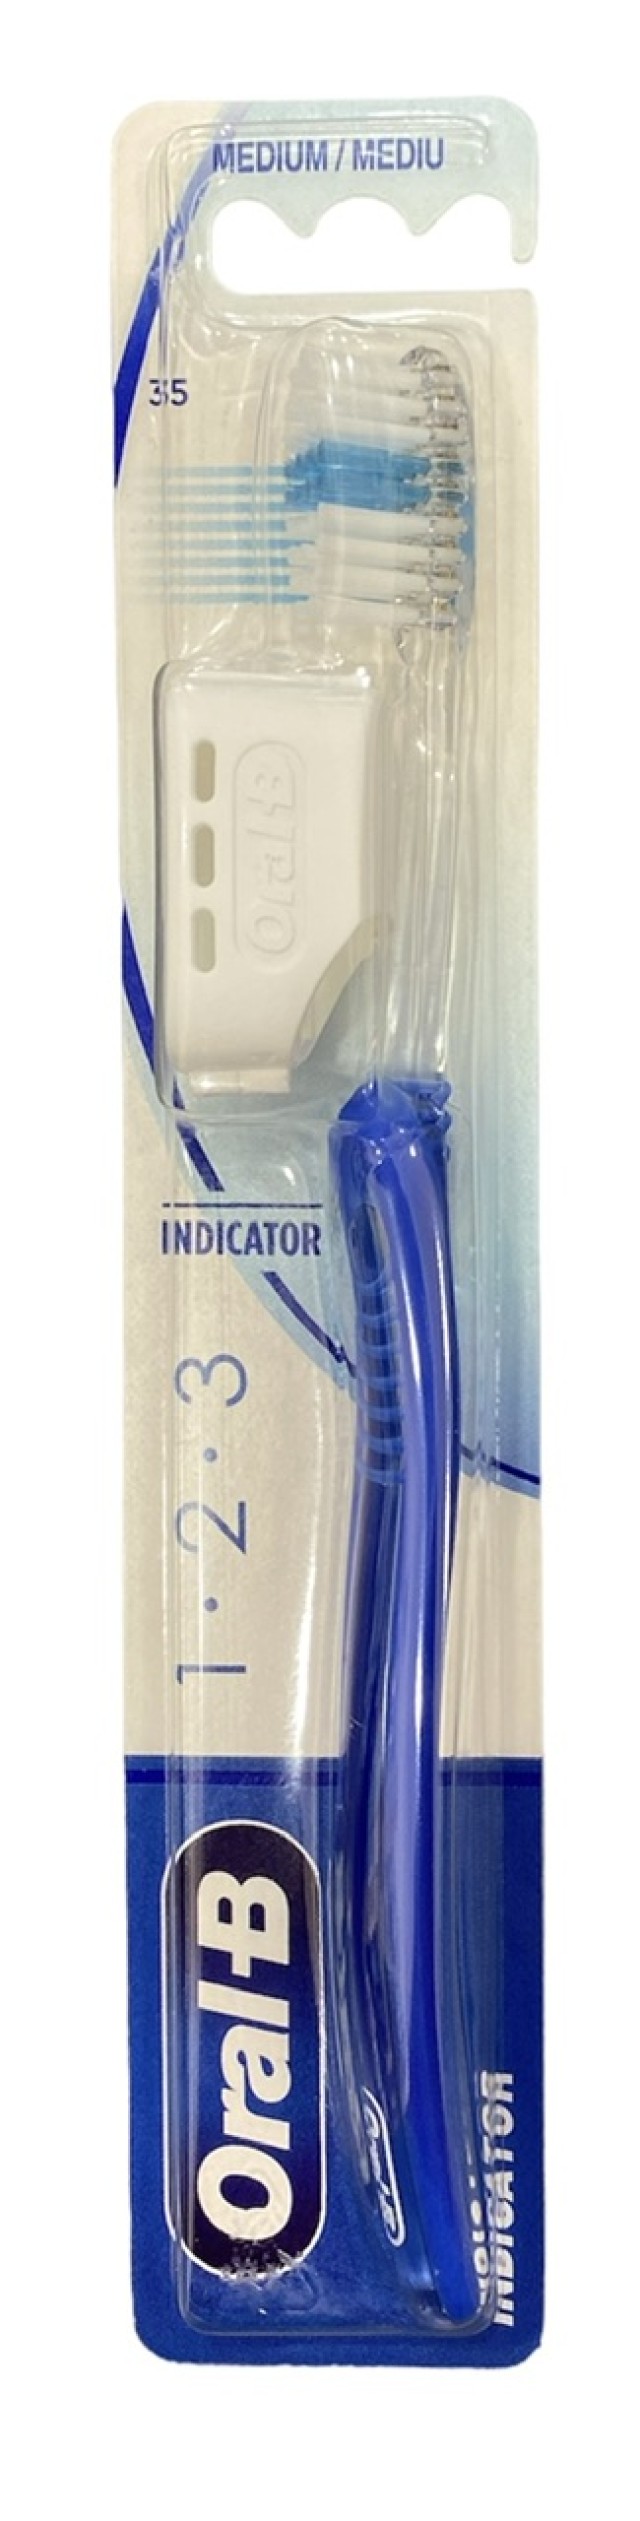 Oral-B Οδοντόβουρτσα Μέτρια Indicator 1-2-3 35mm Χρώμα Μπλε, 1τμχ